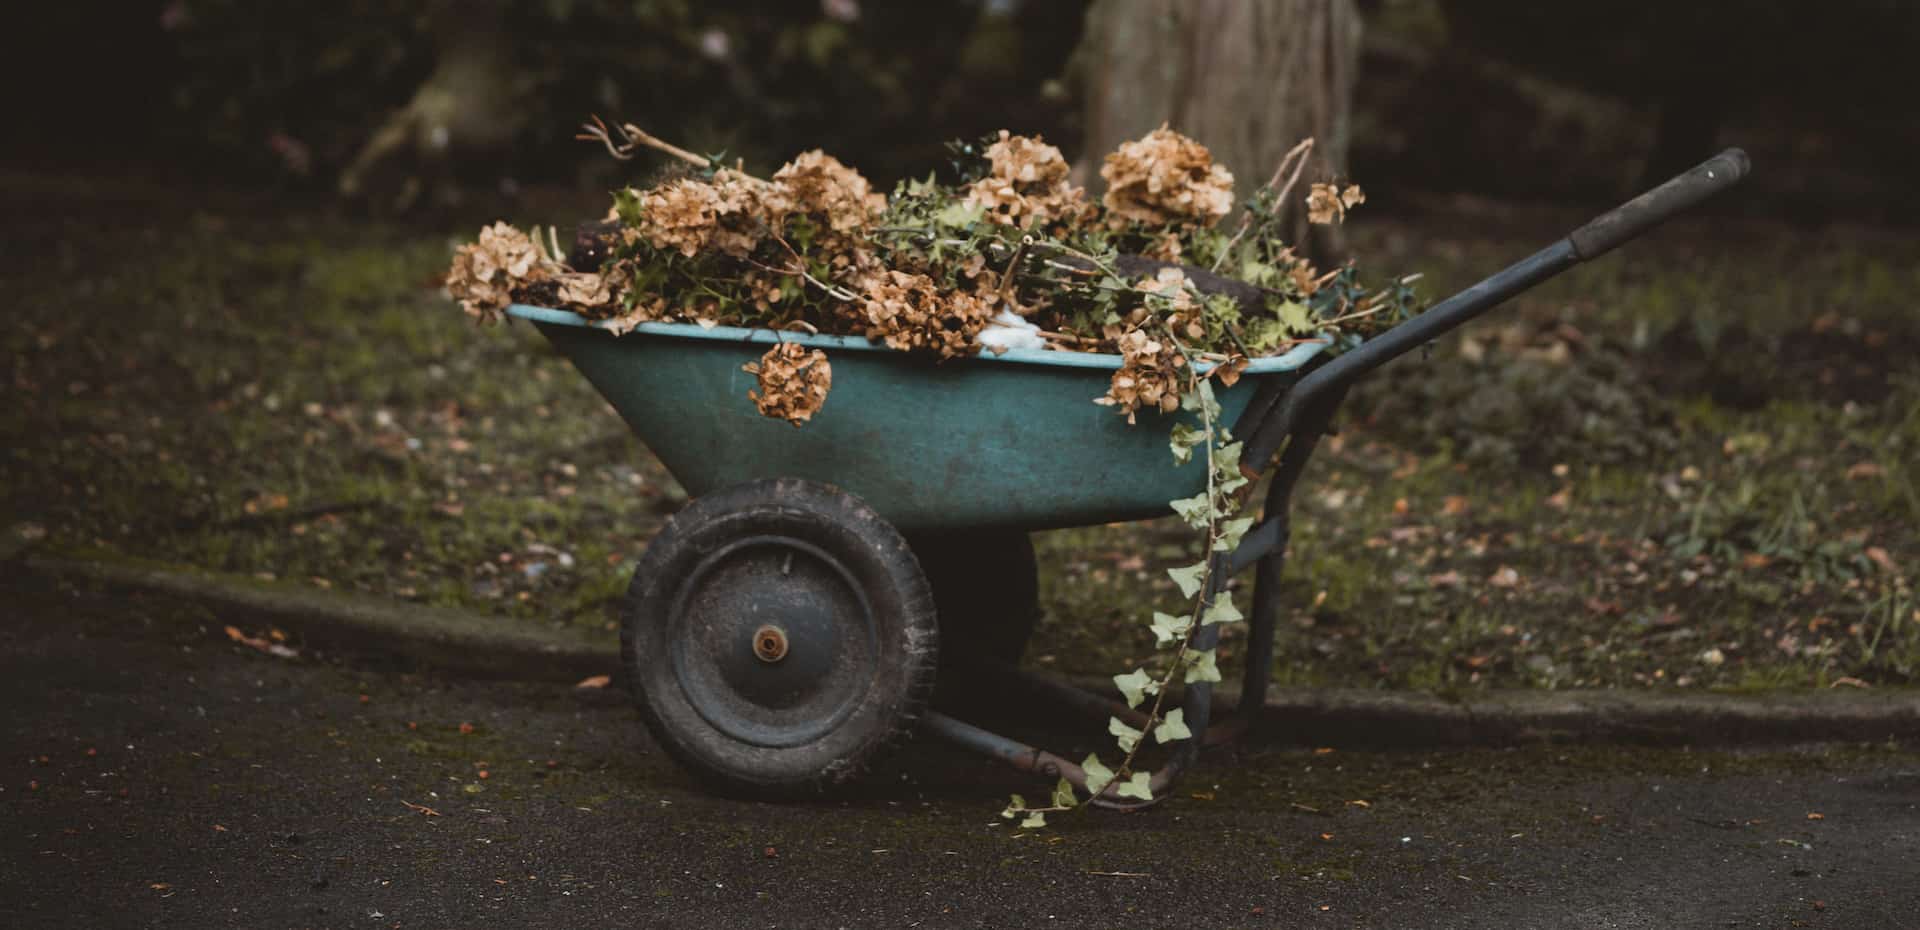 wheelbarrow filled with garden waste